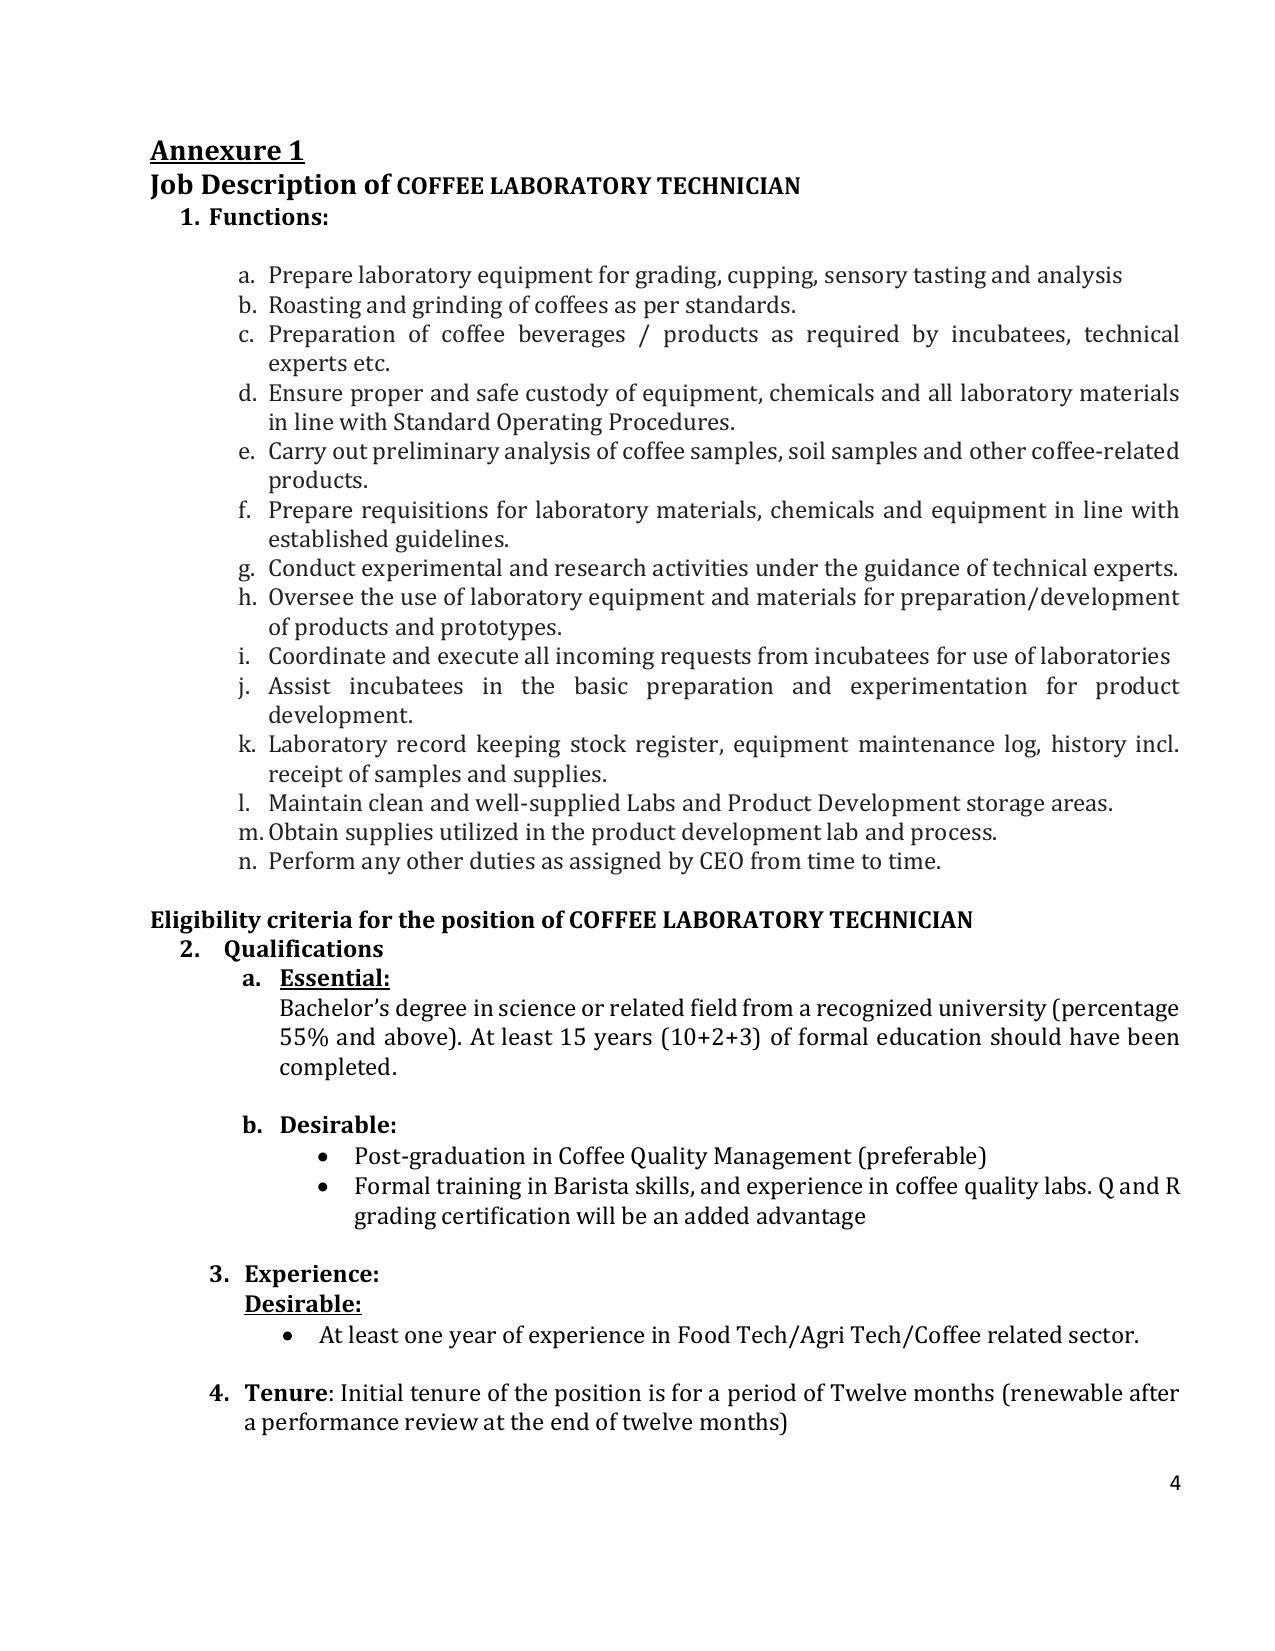 Coffee Board Invites Application for Coffee Laboratory Technician Recruitment 2022 - Page 4